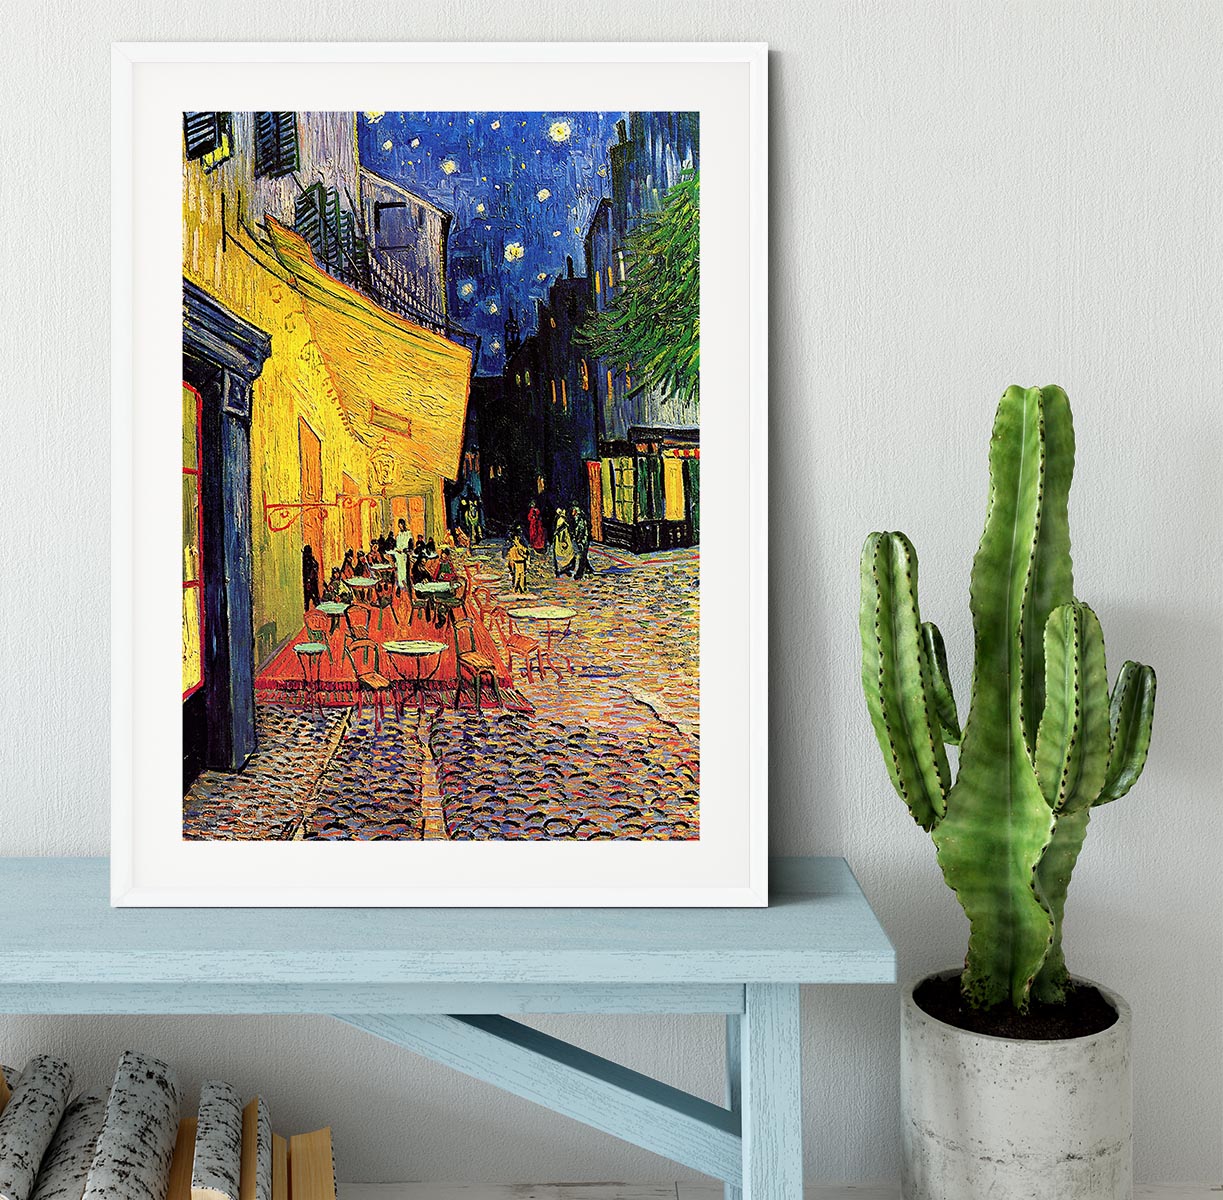 The Terrace Cafe by Van Gogh Framed Print - Canvas Art Rocks - 5